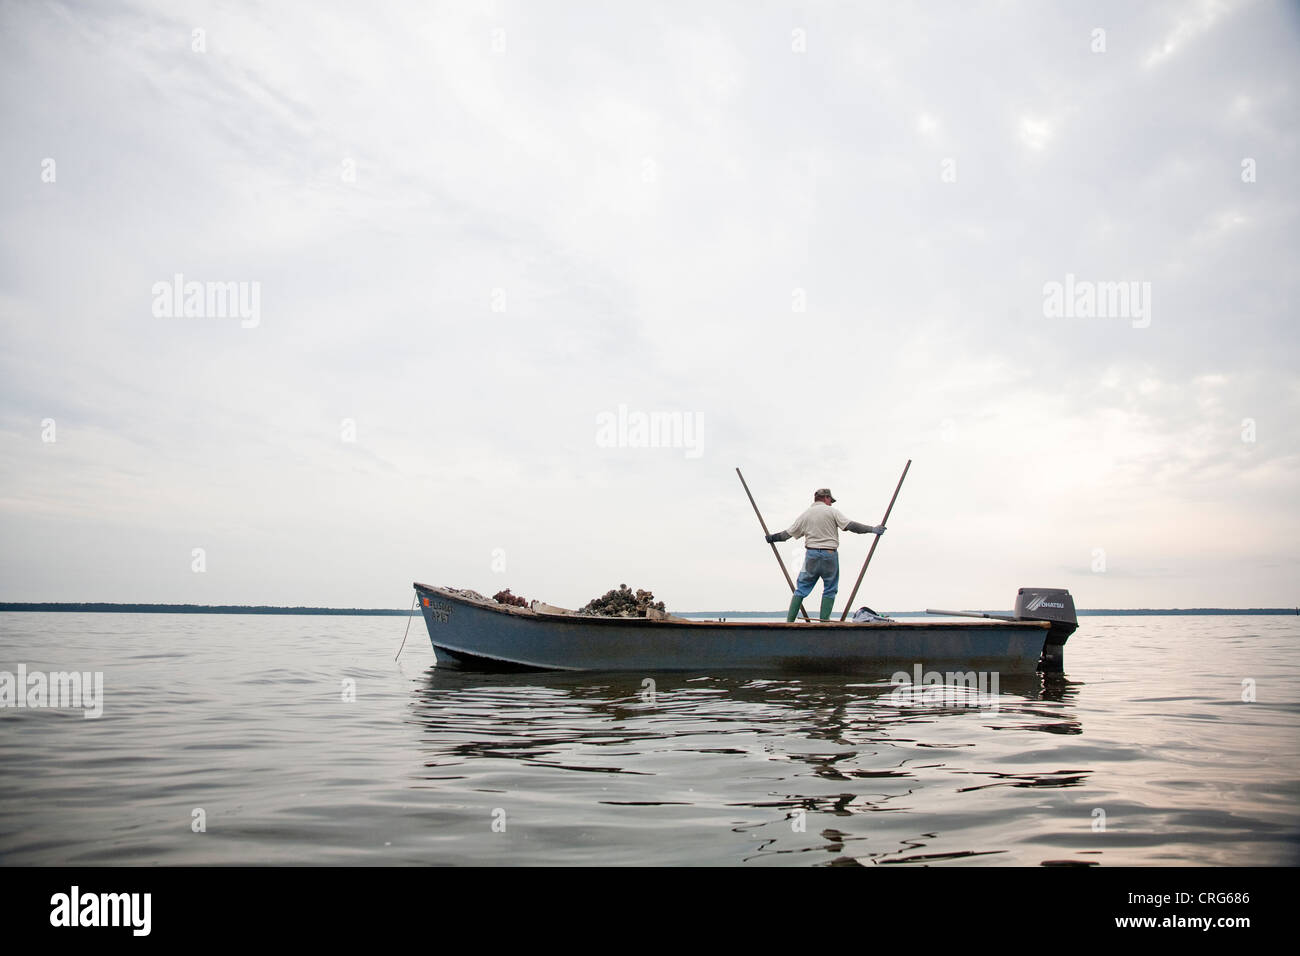 Ein Mann in Jeans und Gummistiefeln steht auf einem Boot Smll und nutzt eine Auster Tong, um Austern in ein ruhiges Gewässer zu sammeln. Stockfoto